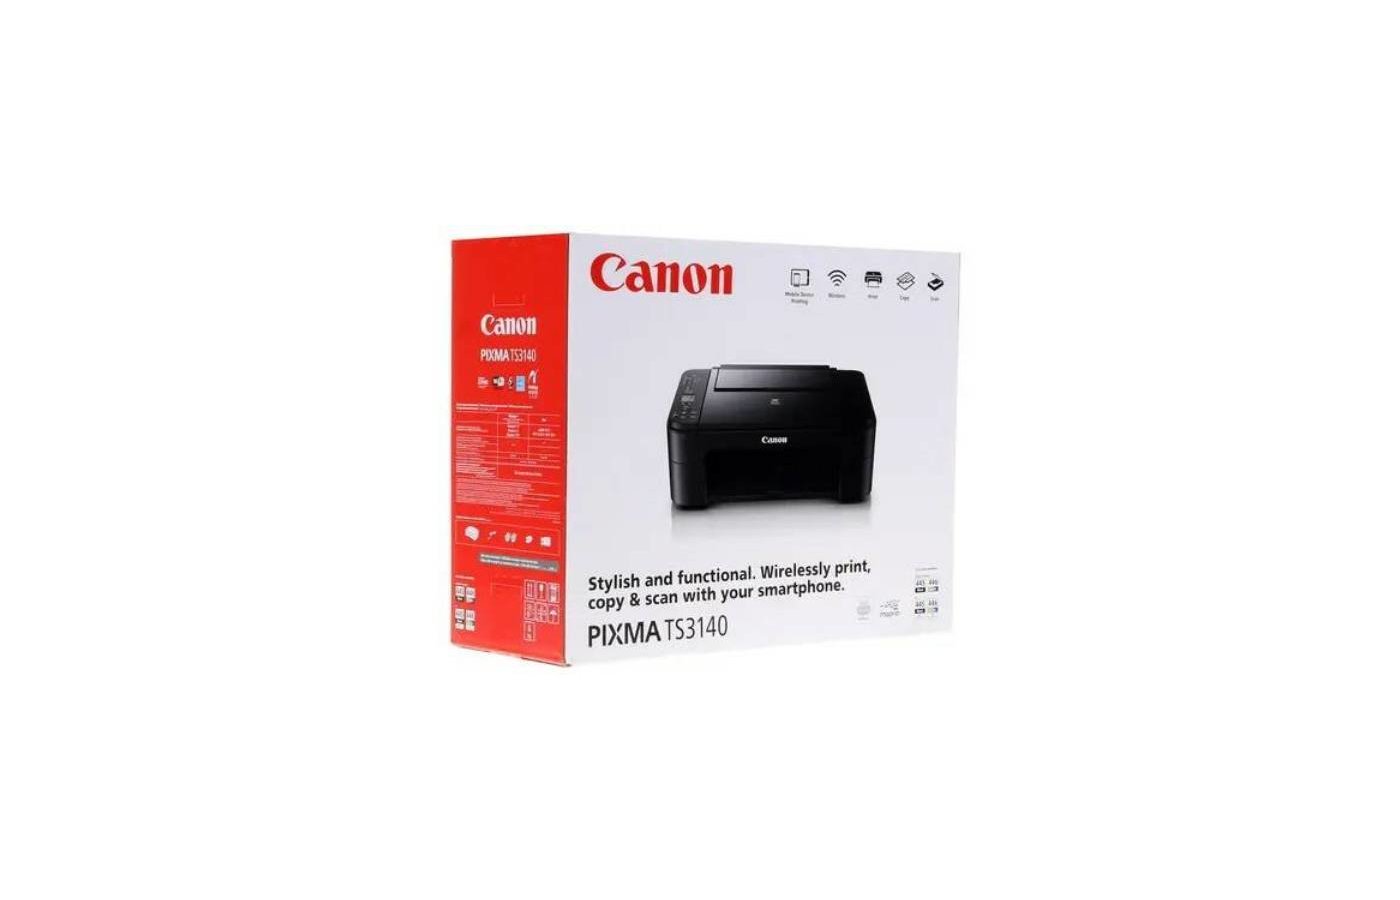 Canon pixma ts3140. Принтера Canon mb2100. Принтер Кэнон ТС 3140 кнопки. Canon 3140 дисплей. Canon ts3140 инструкция.